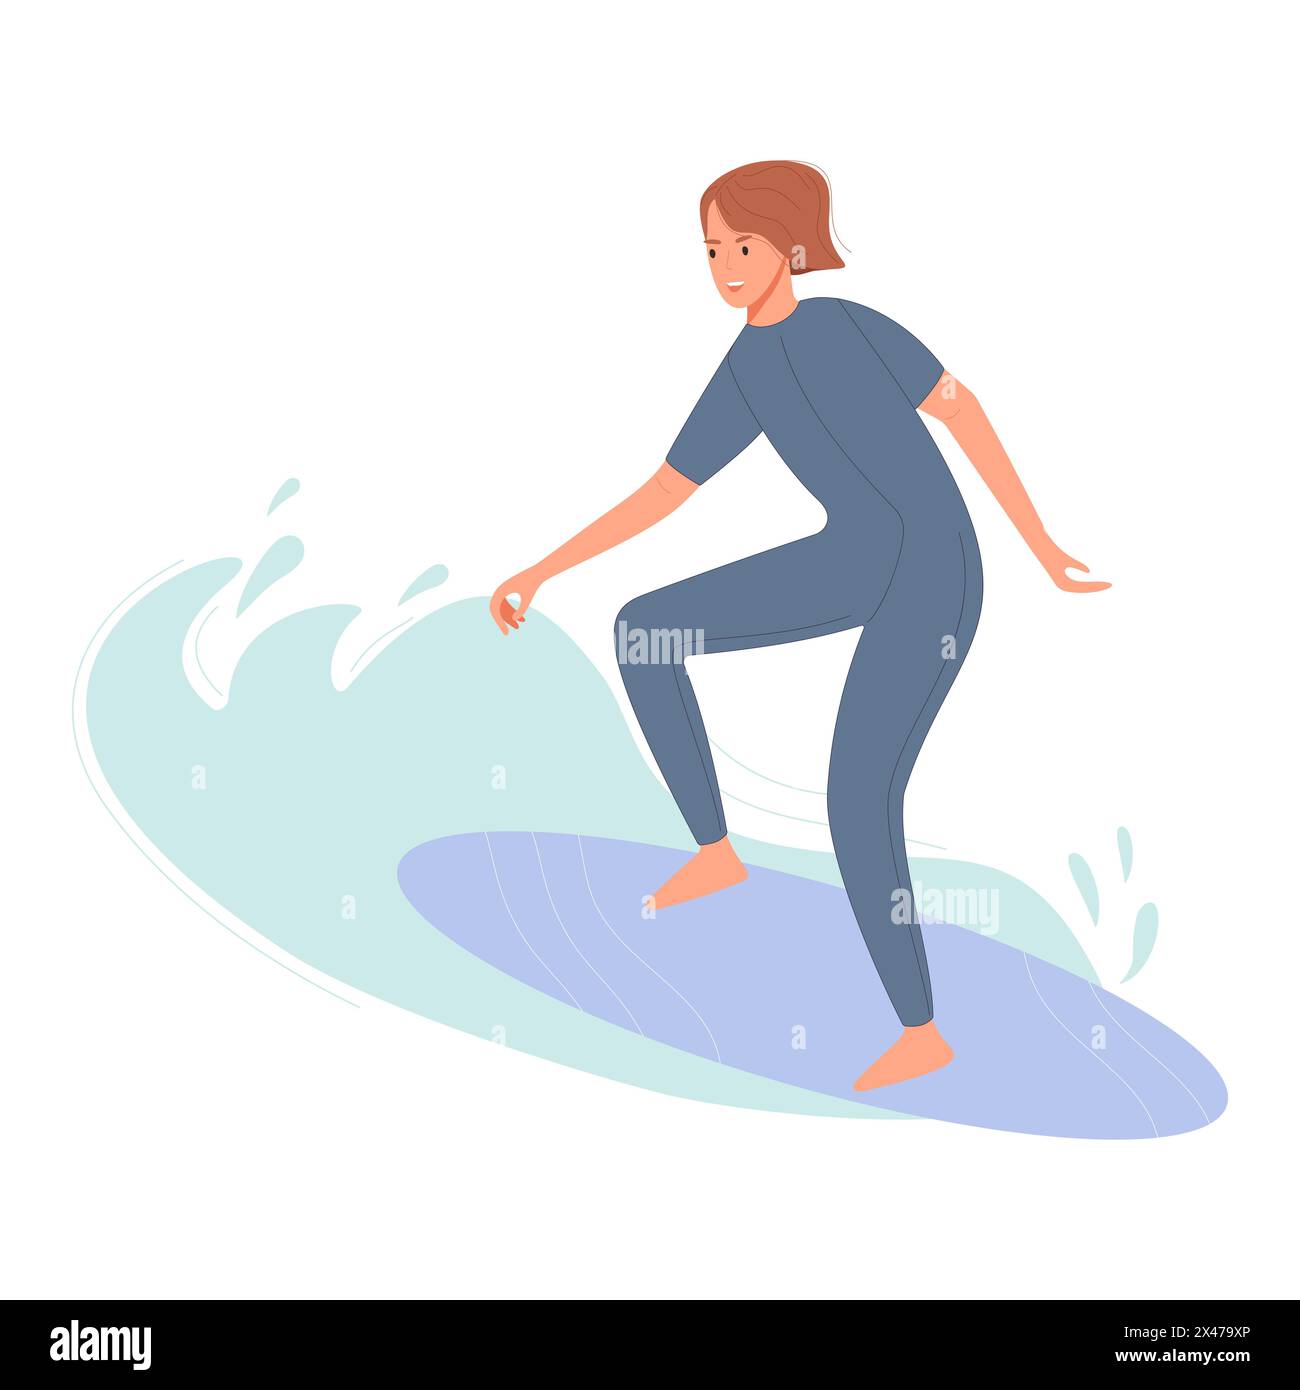 Une femme dans une combinaison grise surfe sur une grande vague, montrant son habileté et le frisson du sport. Illustration de Vecteur